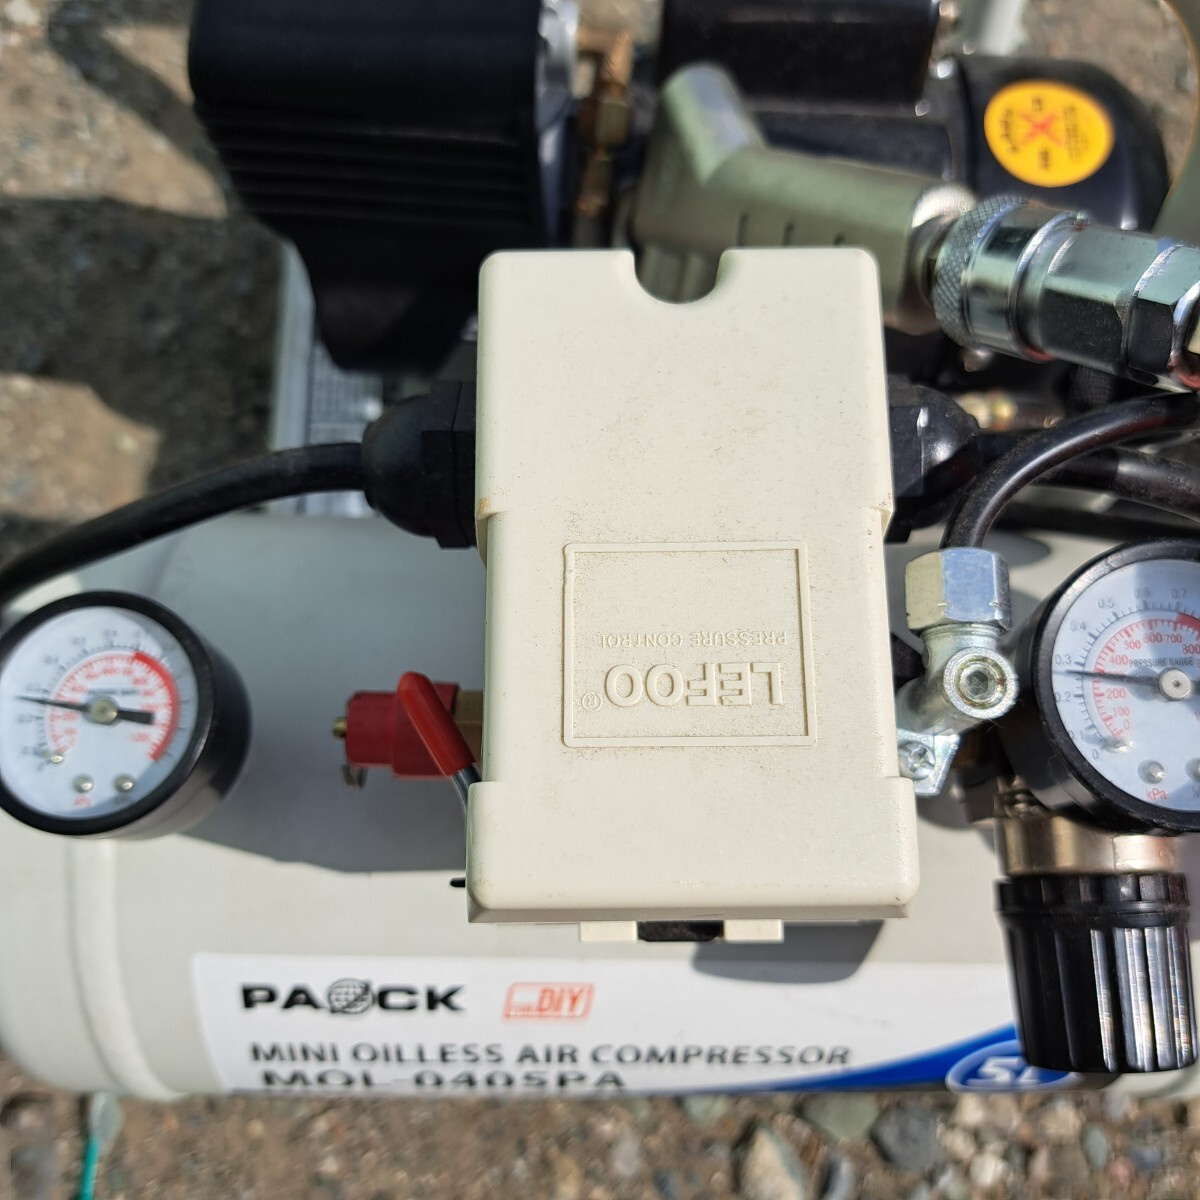 パオック ミニオイルレスエアコンコンプレッサー MOL-0405PA 容量5L 無給油式 直接可の画像5